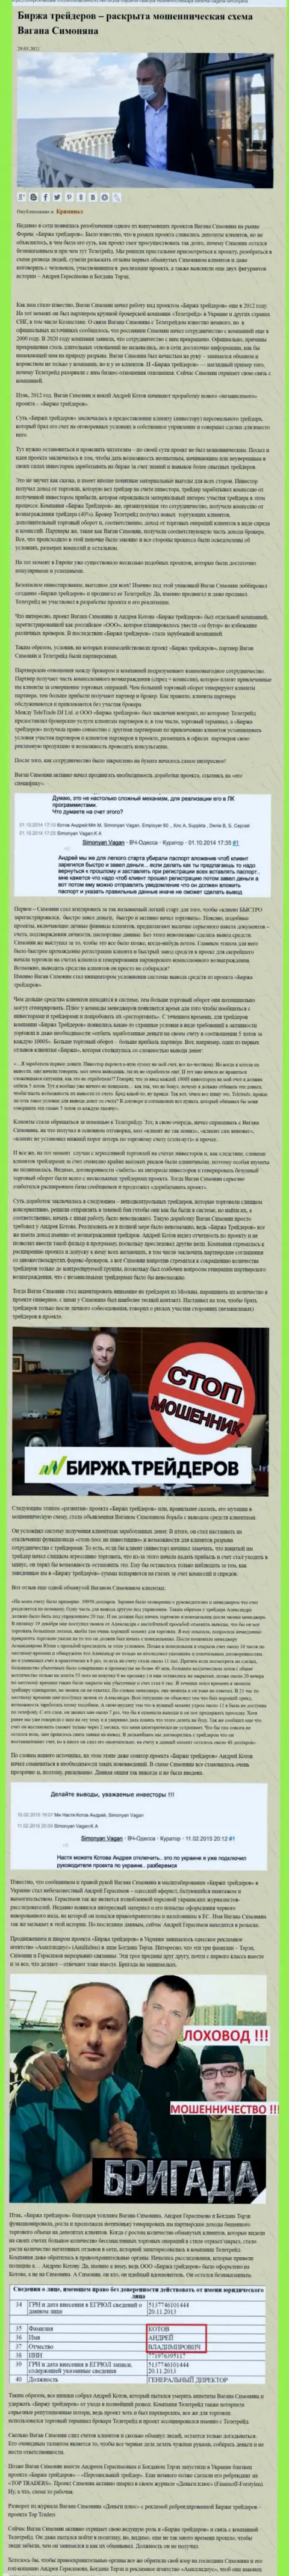 Пиаром конторы B Traders, тесно связанной с мошенниками TeleTrade Org, также занимался Терзи Богдан